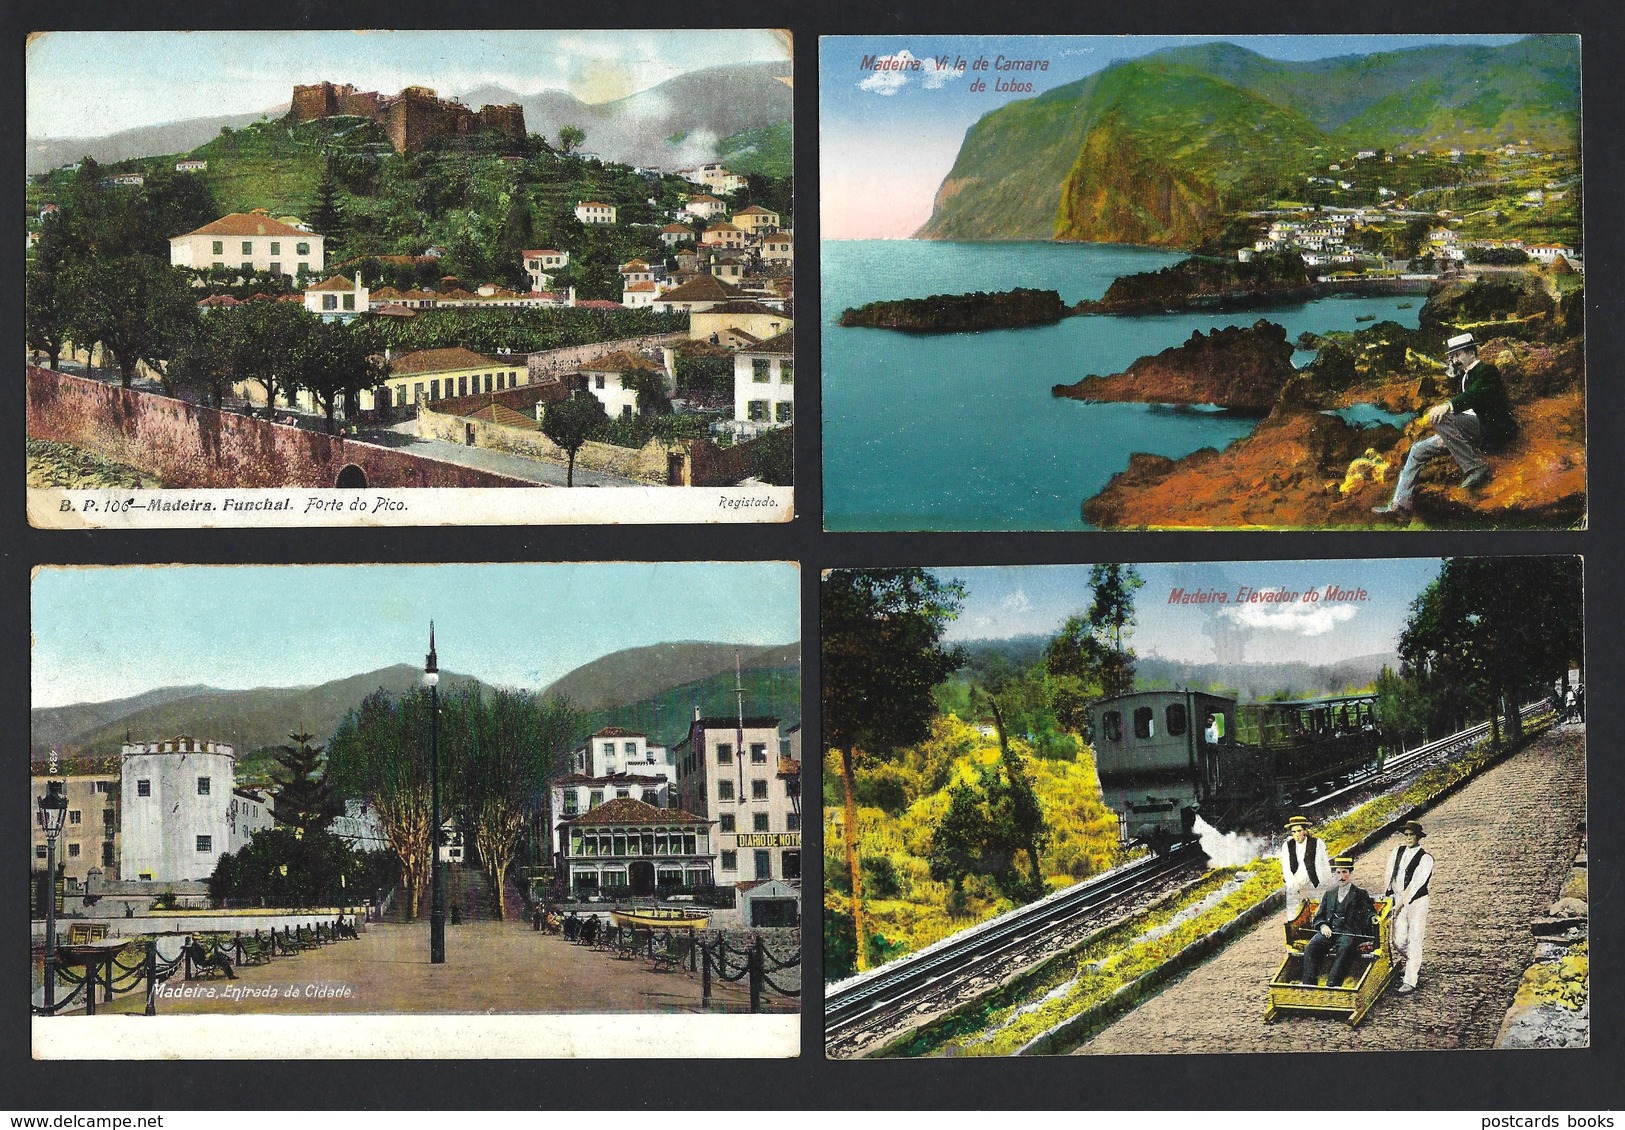 Conjunto De 4 Postais Antigos Da MADEIRA: Pico + Camara De Lobos + Funchal + Elevador Do Monte. SET 4 Postcards Portugal - Madeira